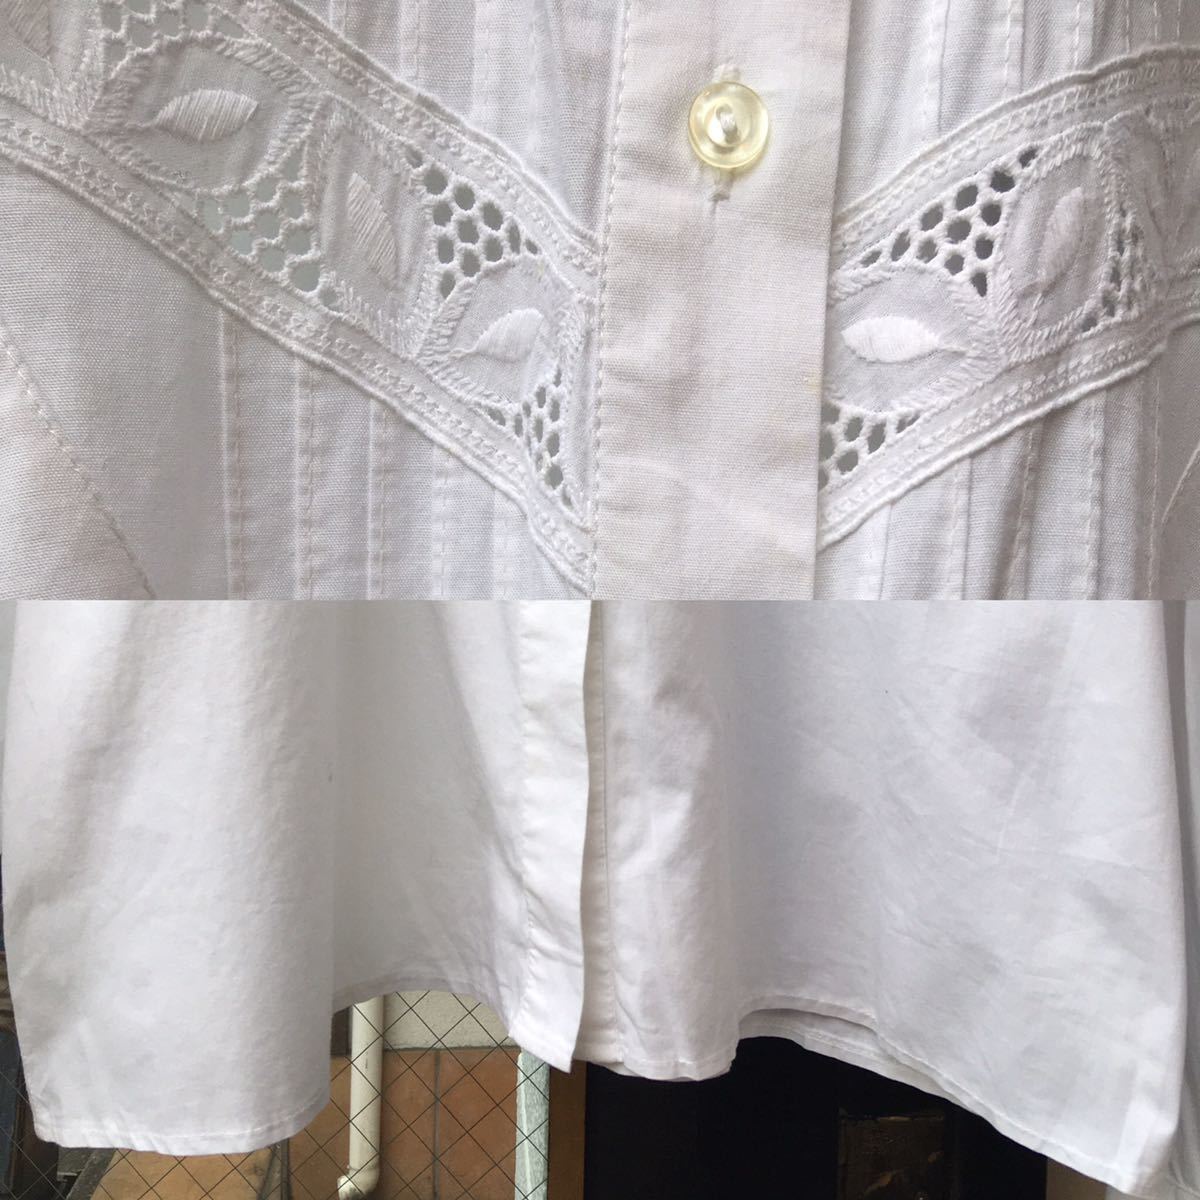 ヨーロッパ古着 ブラウス vintage blouse shirt 刺繍 レース 長袖 半袖 シャツ LV718_画像6